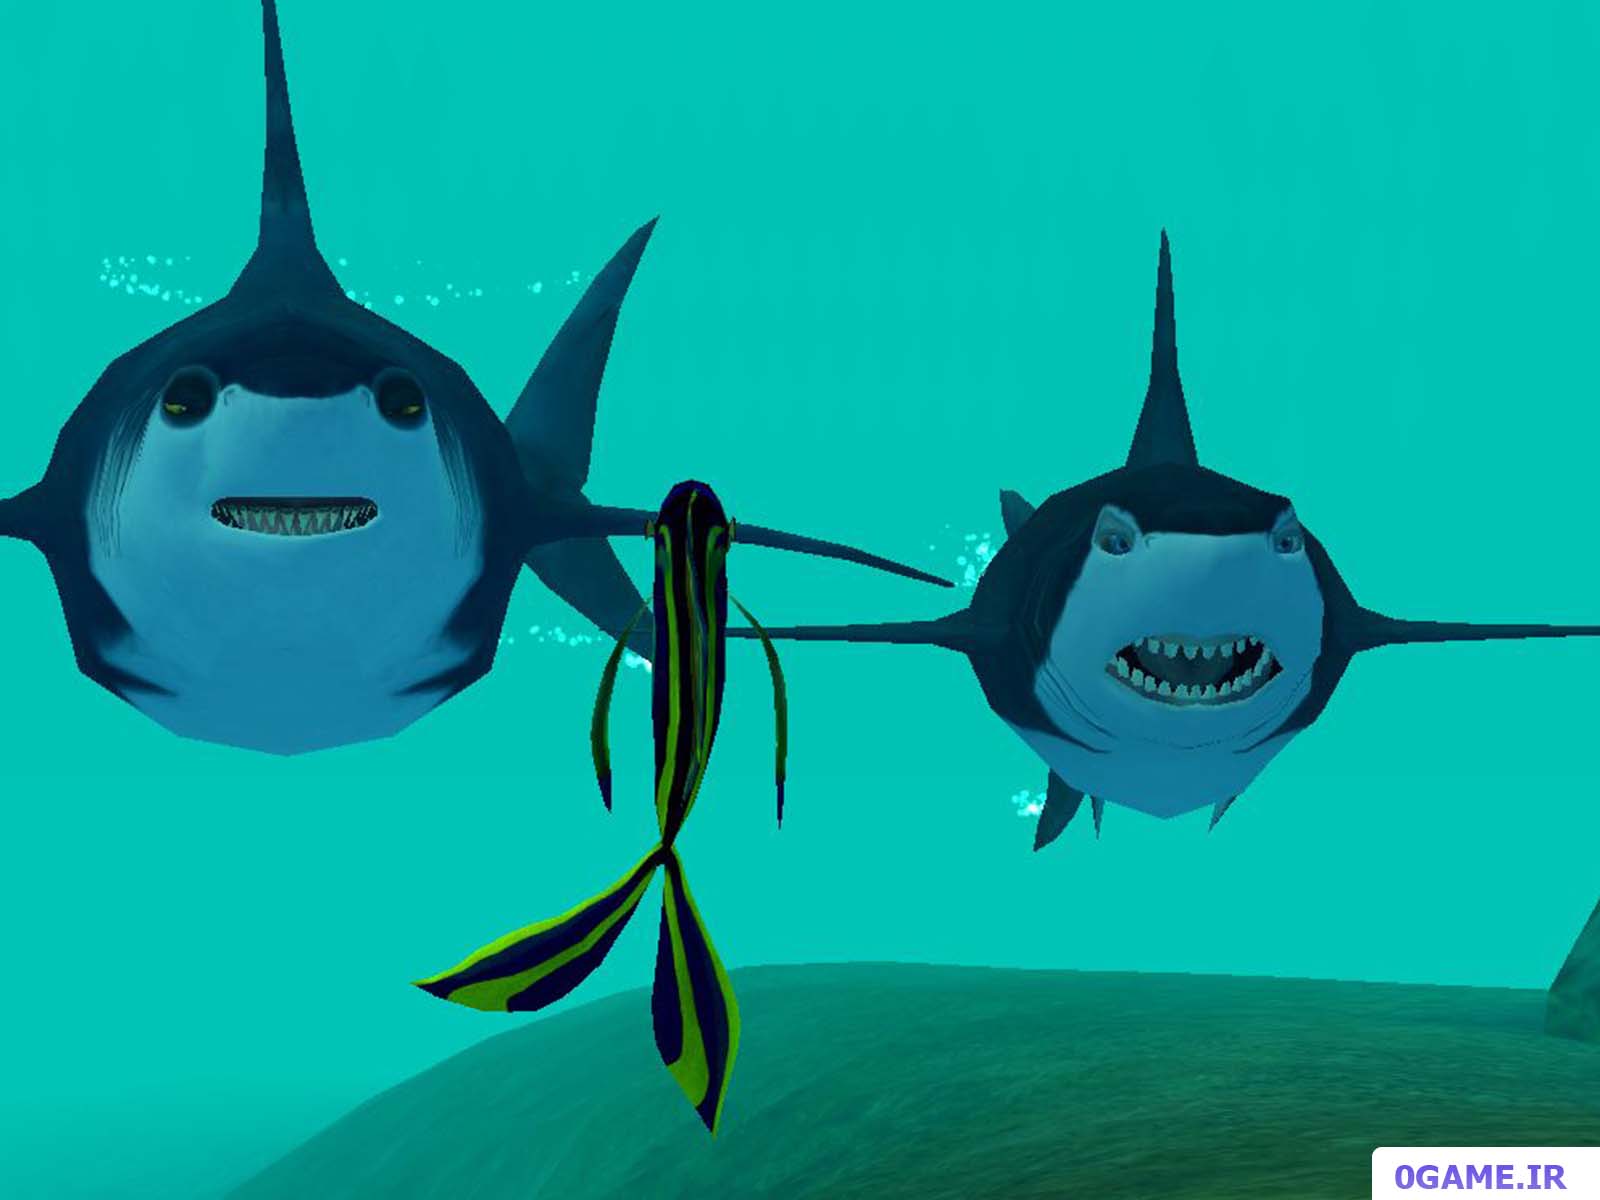 دانلود بازی داستان کوسه (Shark Tale) نسخه کامل برای کامپیوتر